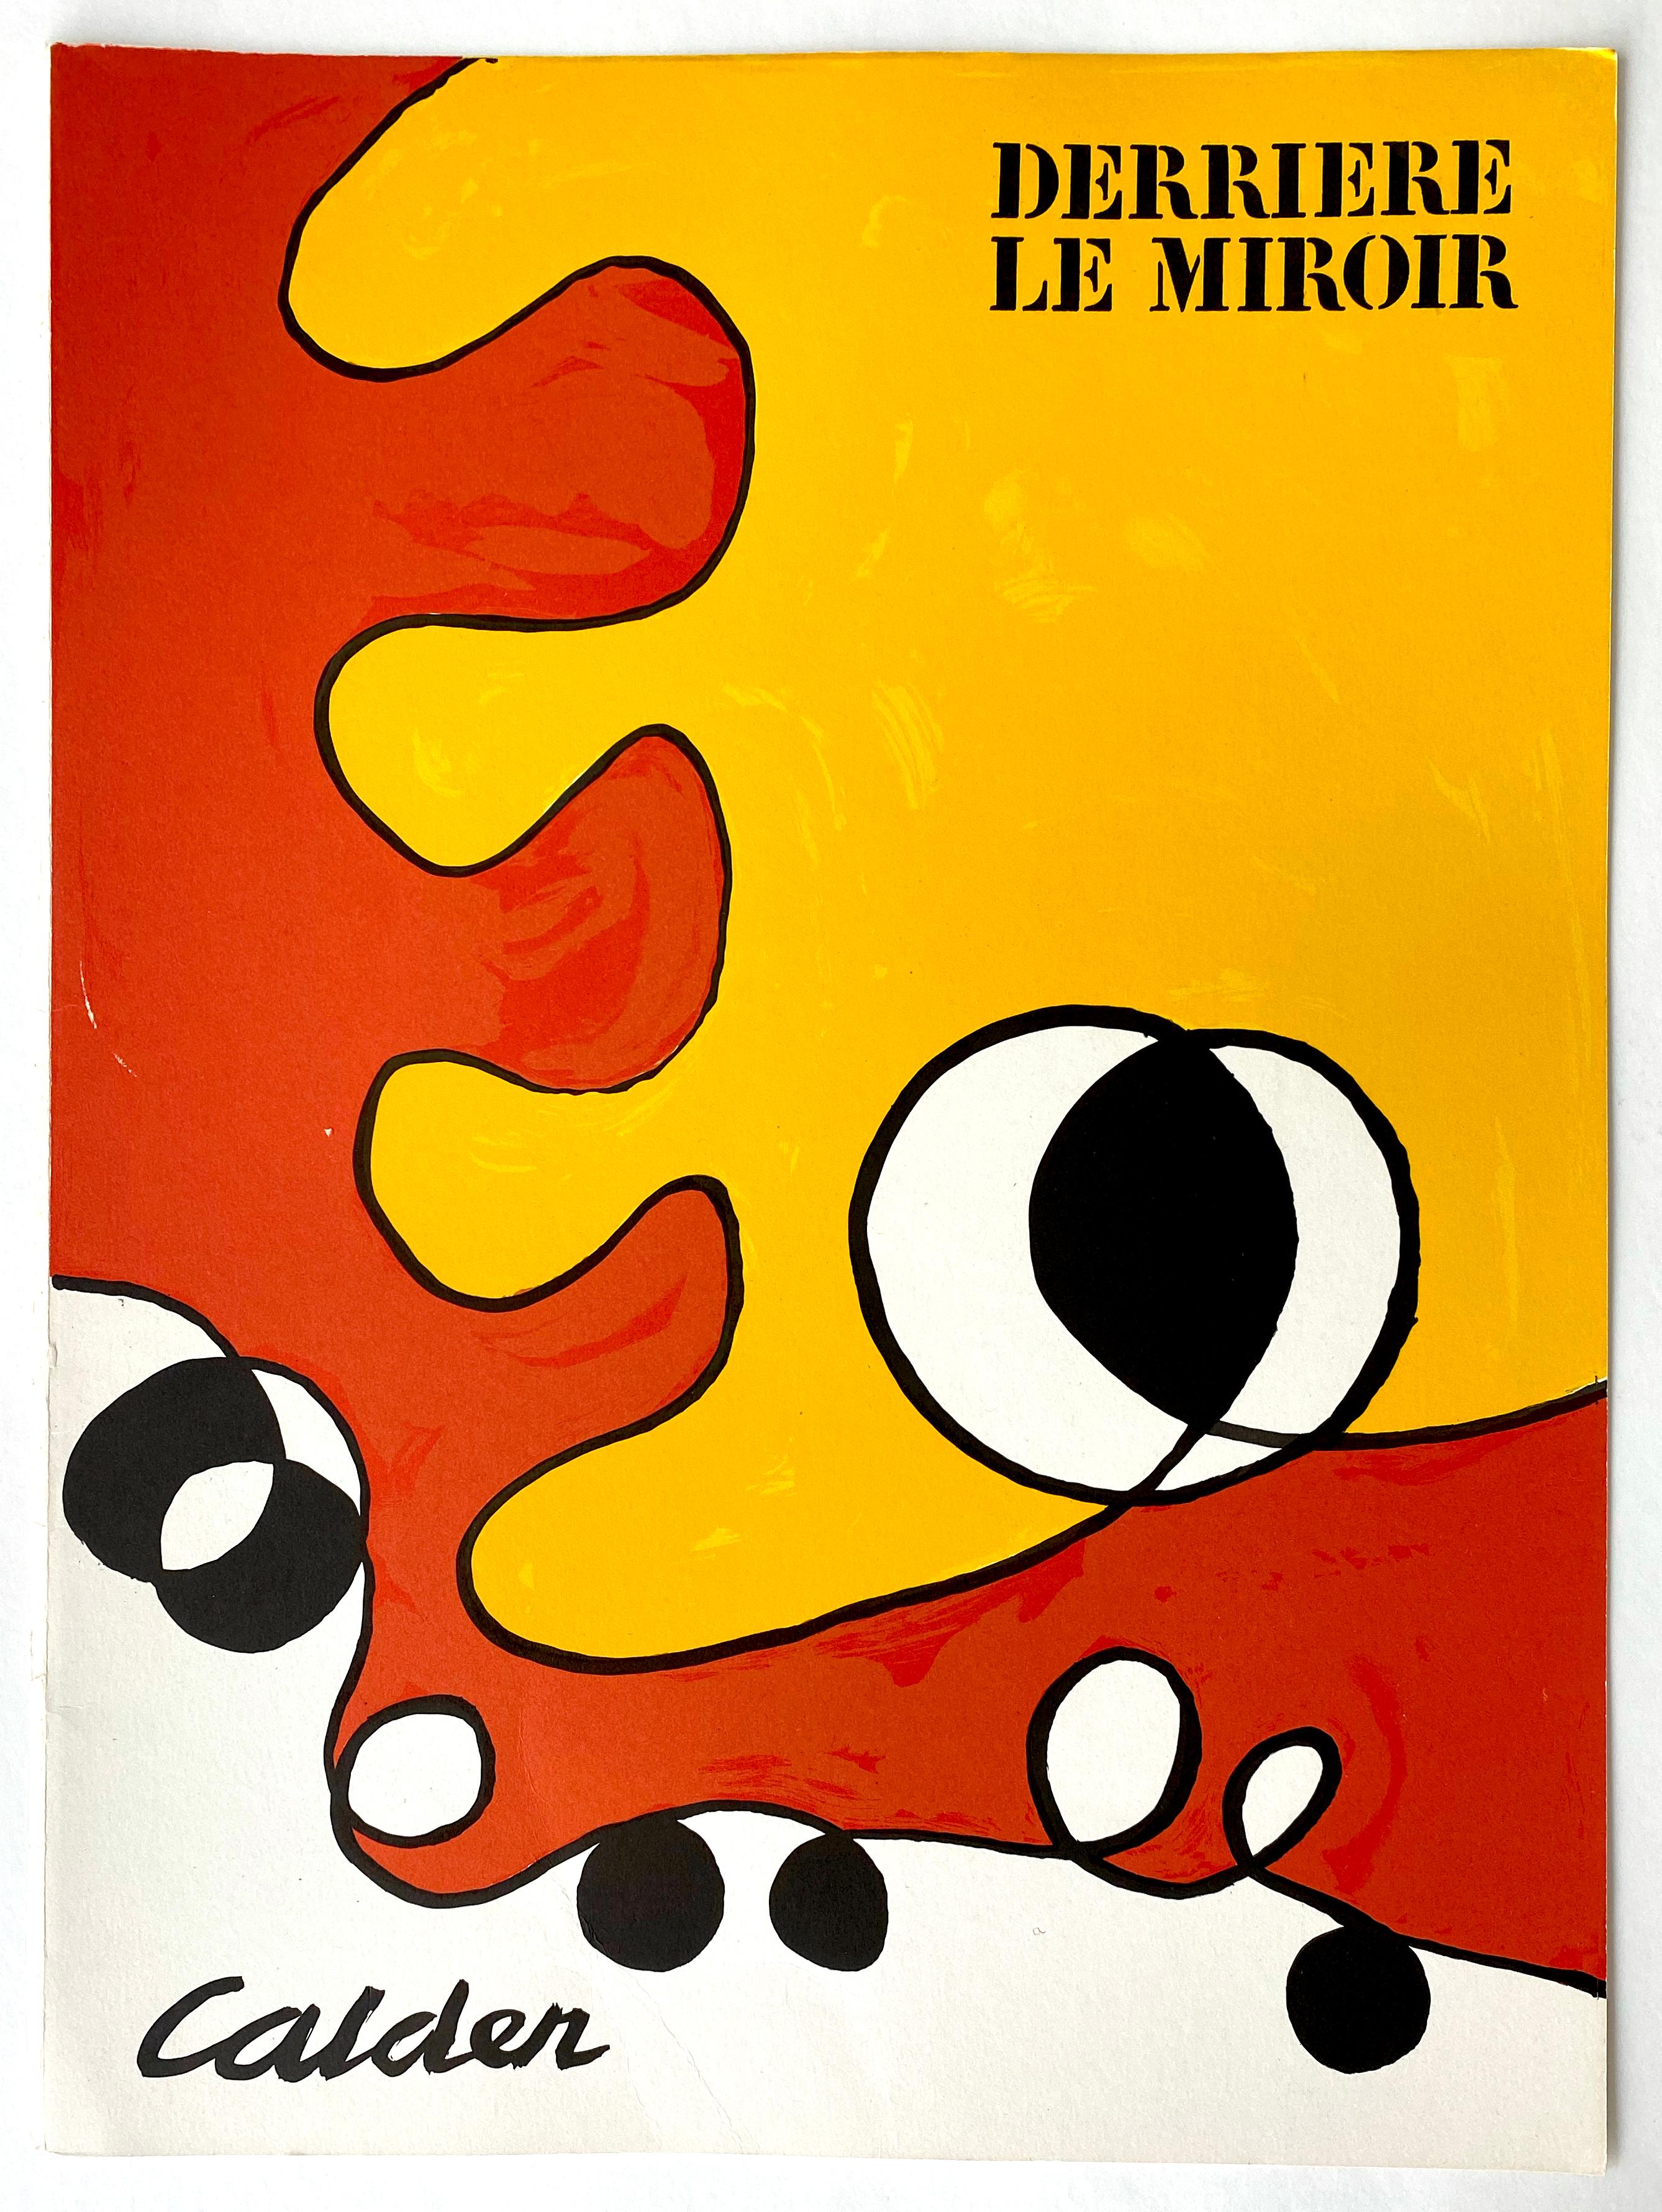 Derriere Le Miroir No. 173, Cover - Print by Alexander Calder